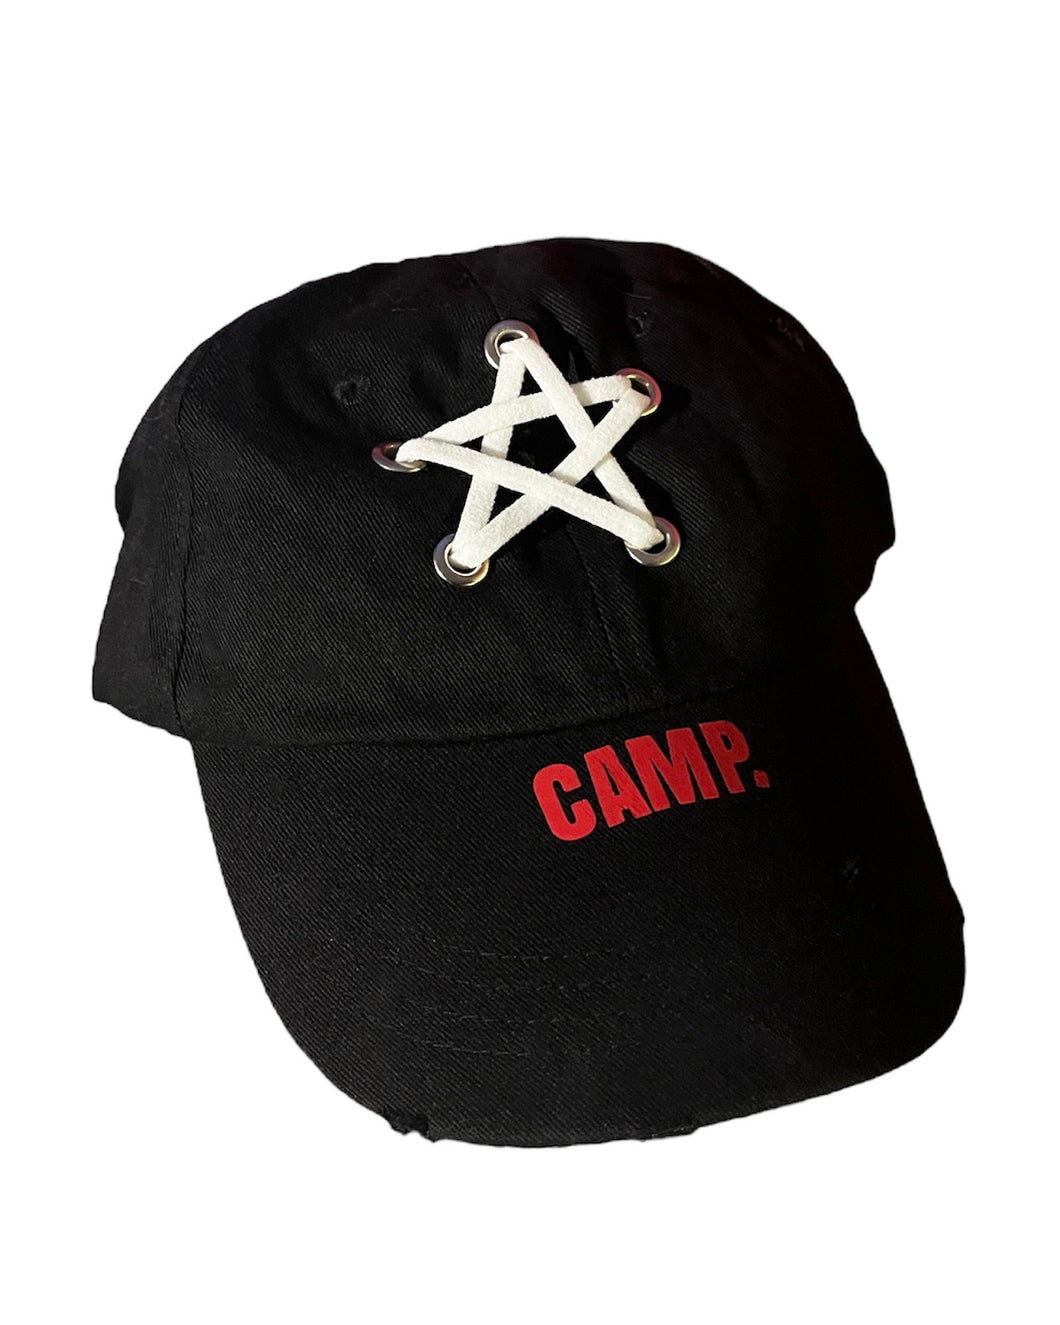 STARCAMP HAT